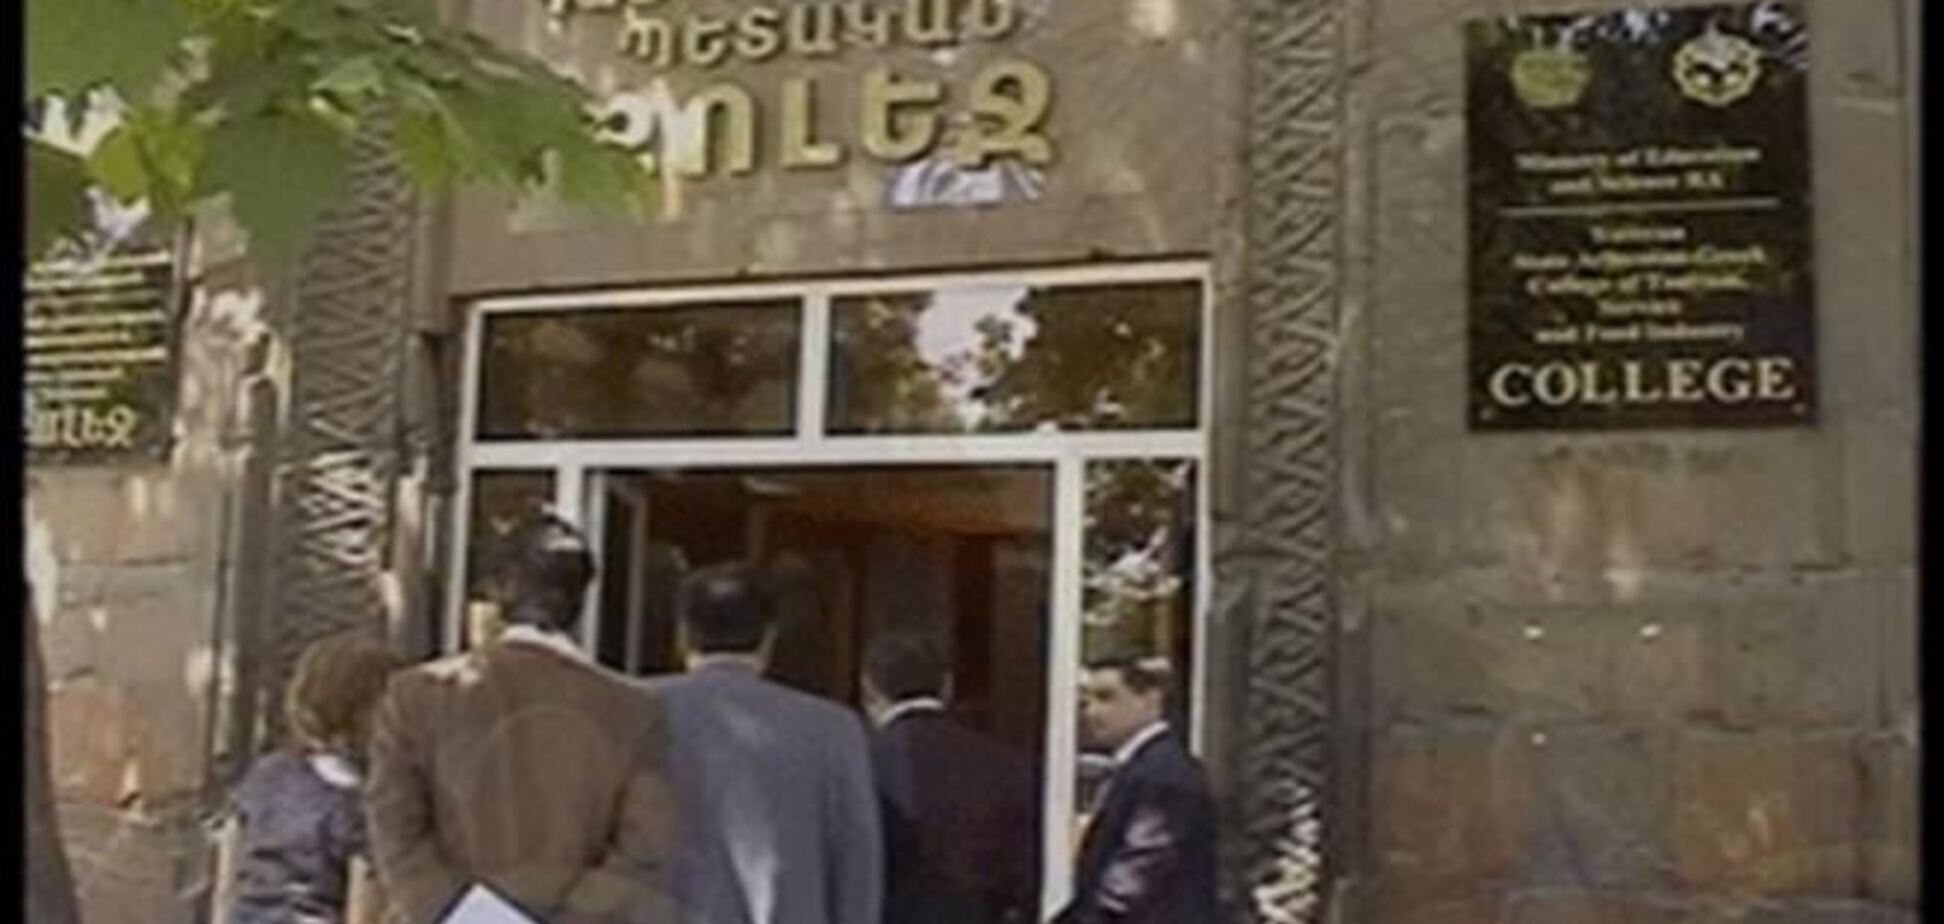 В Ереване прогремел взрыв в армяно-греческом колледже